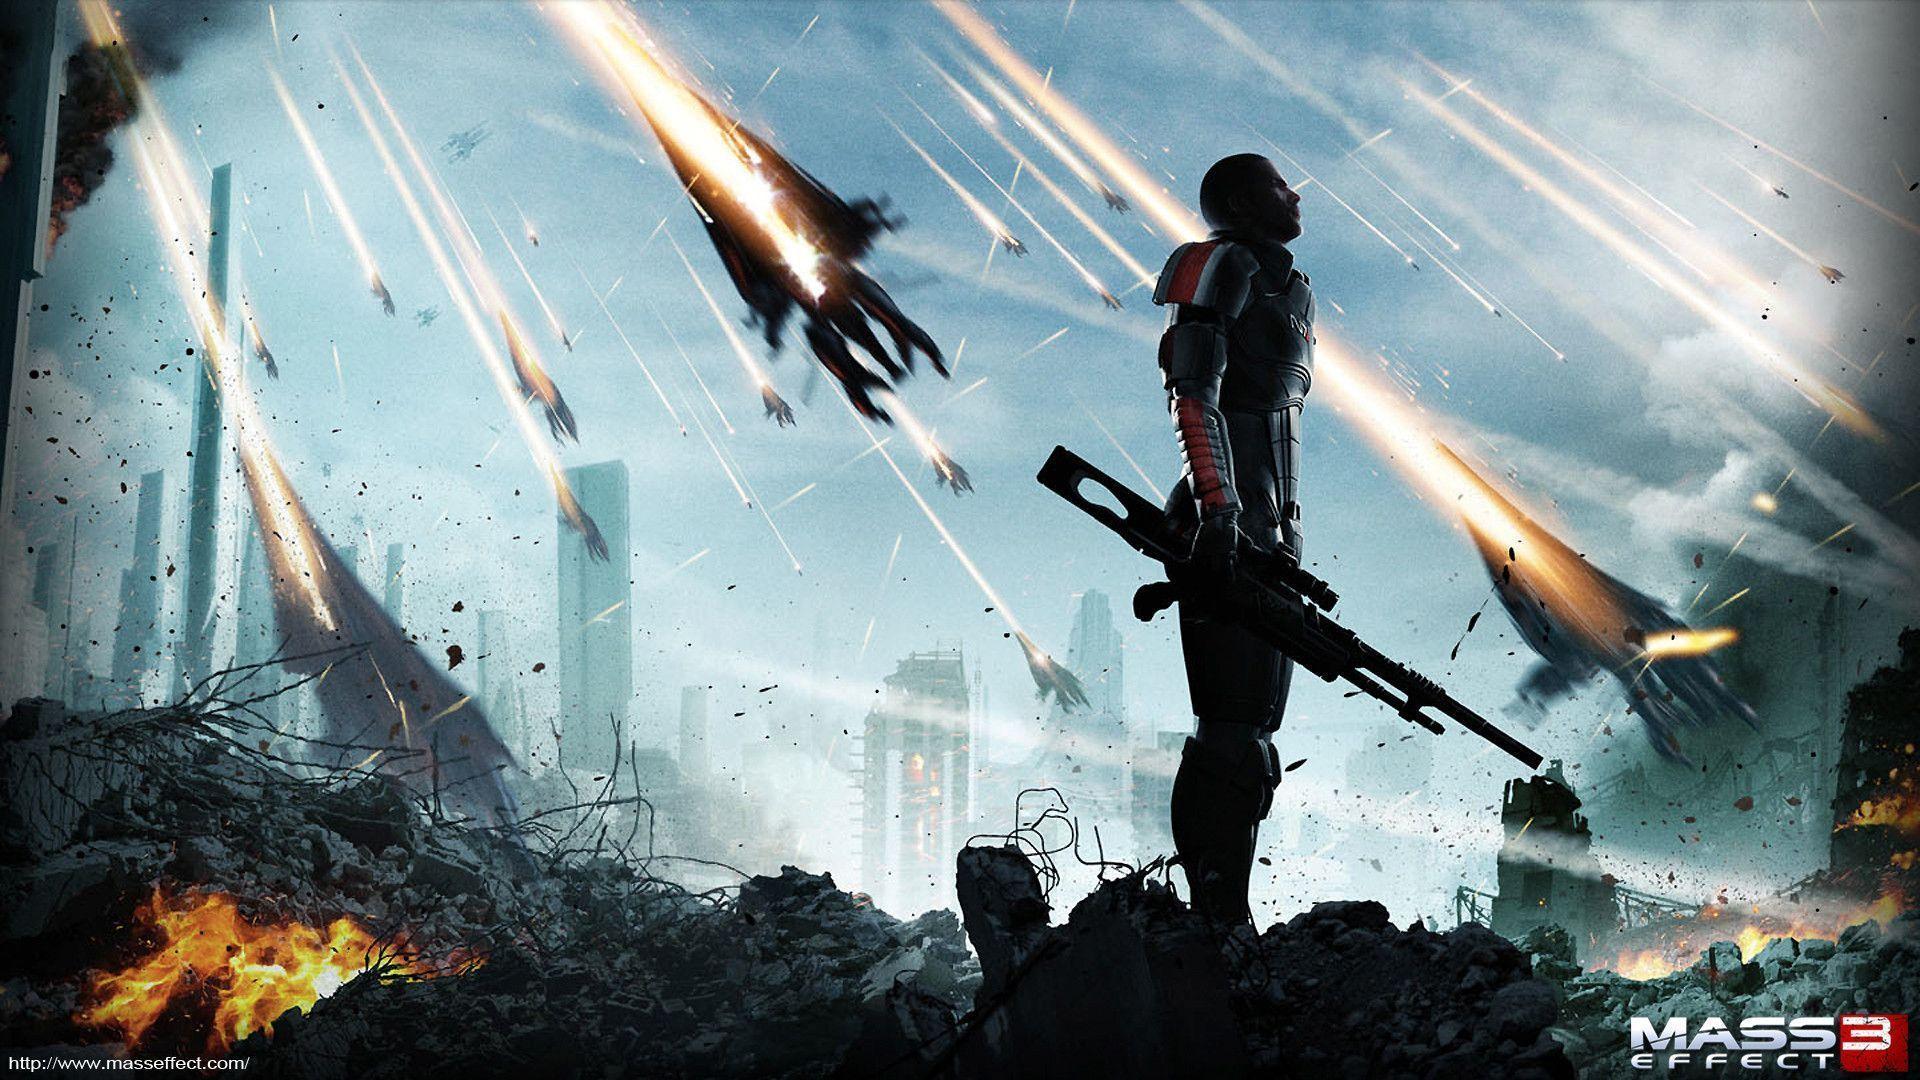 57+] Mass Effect 3 Desktop Background - WallpaperSafari